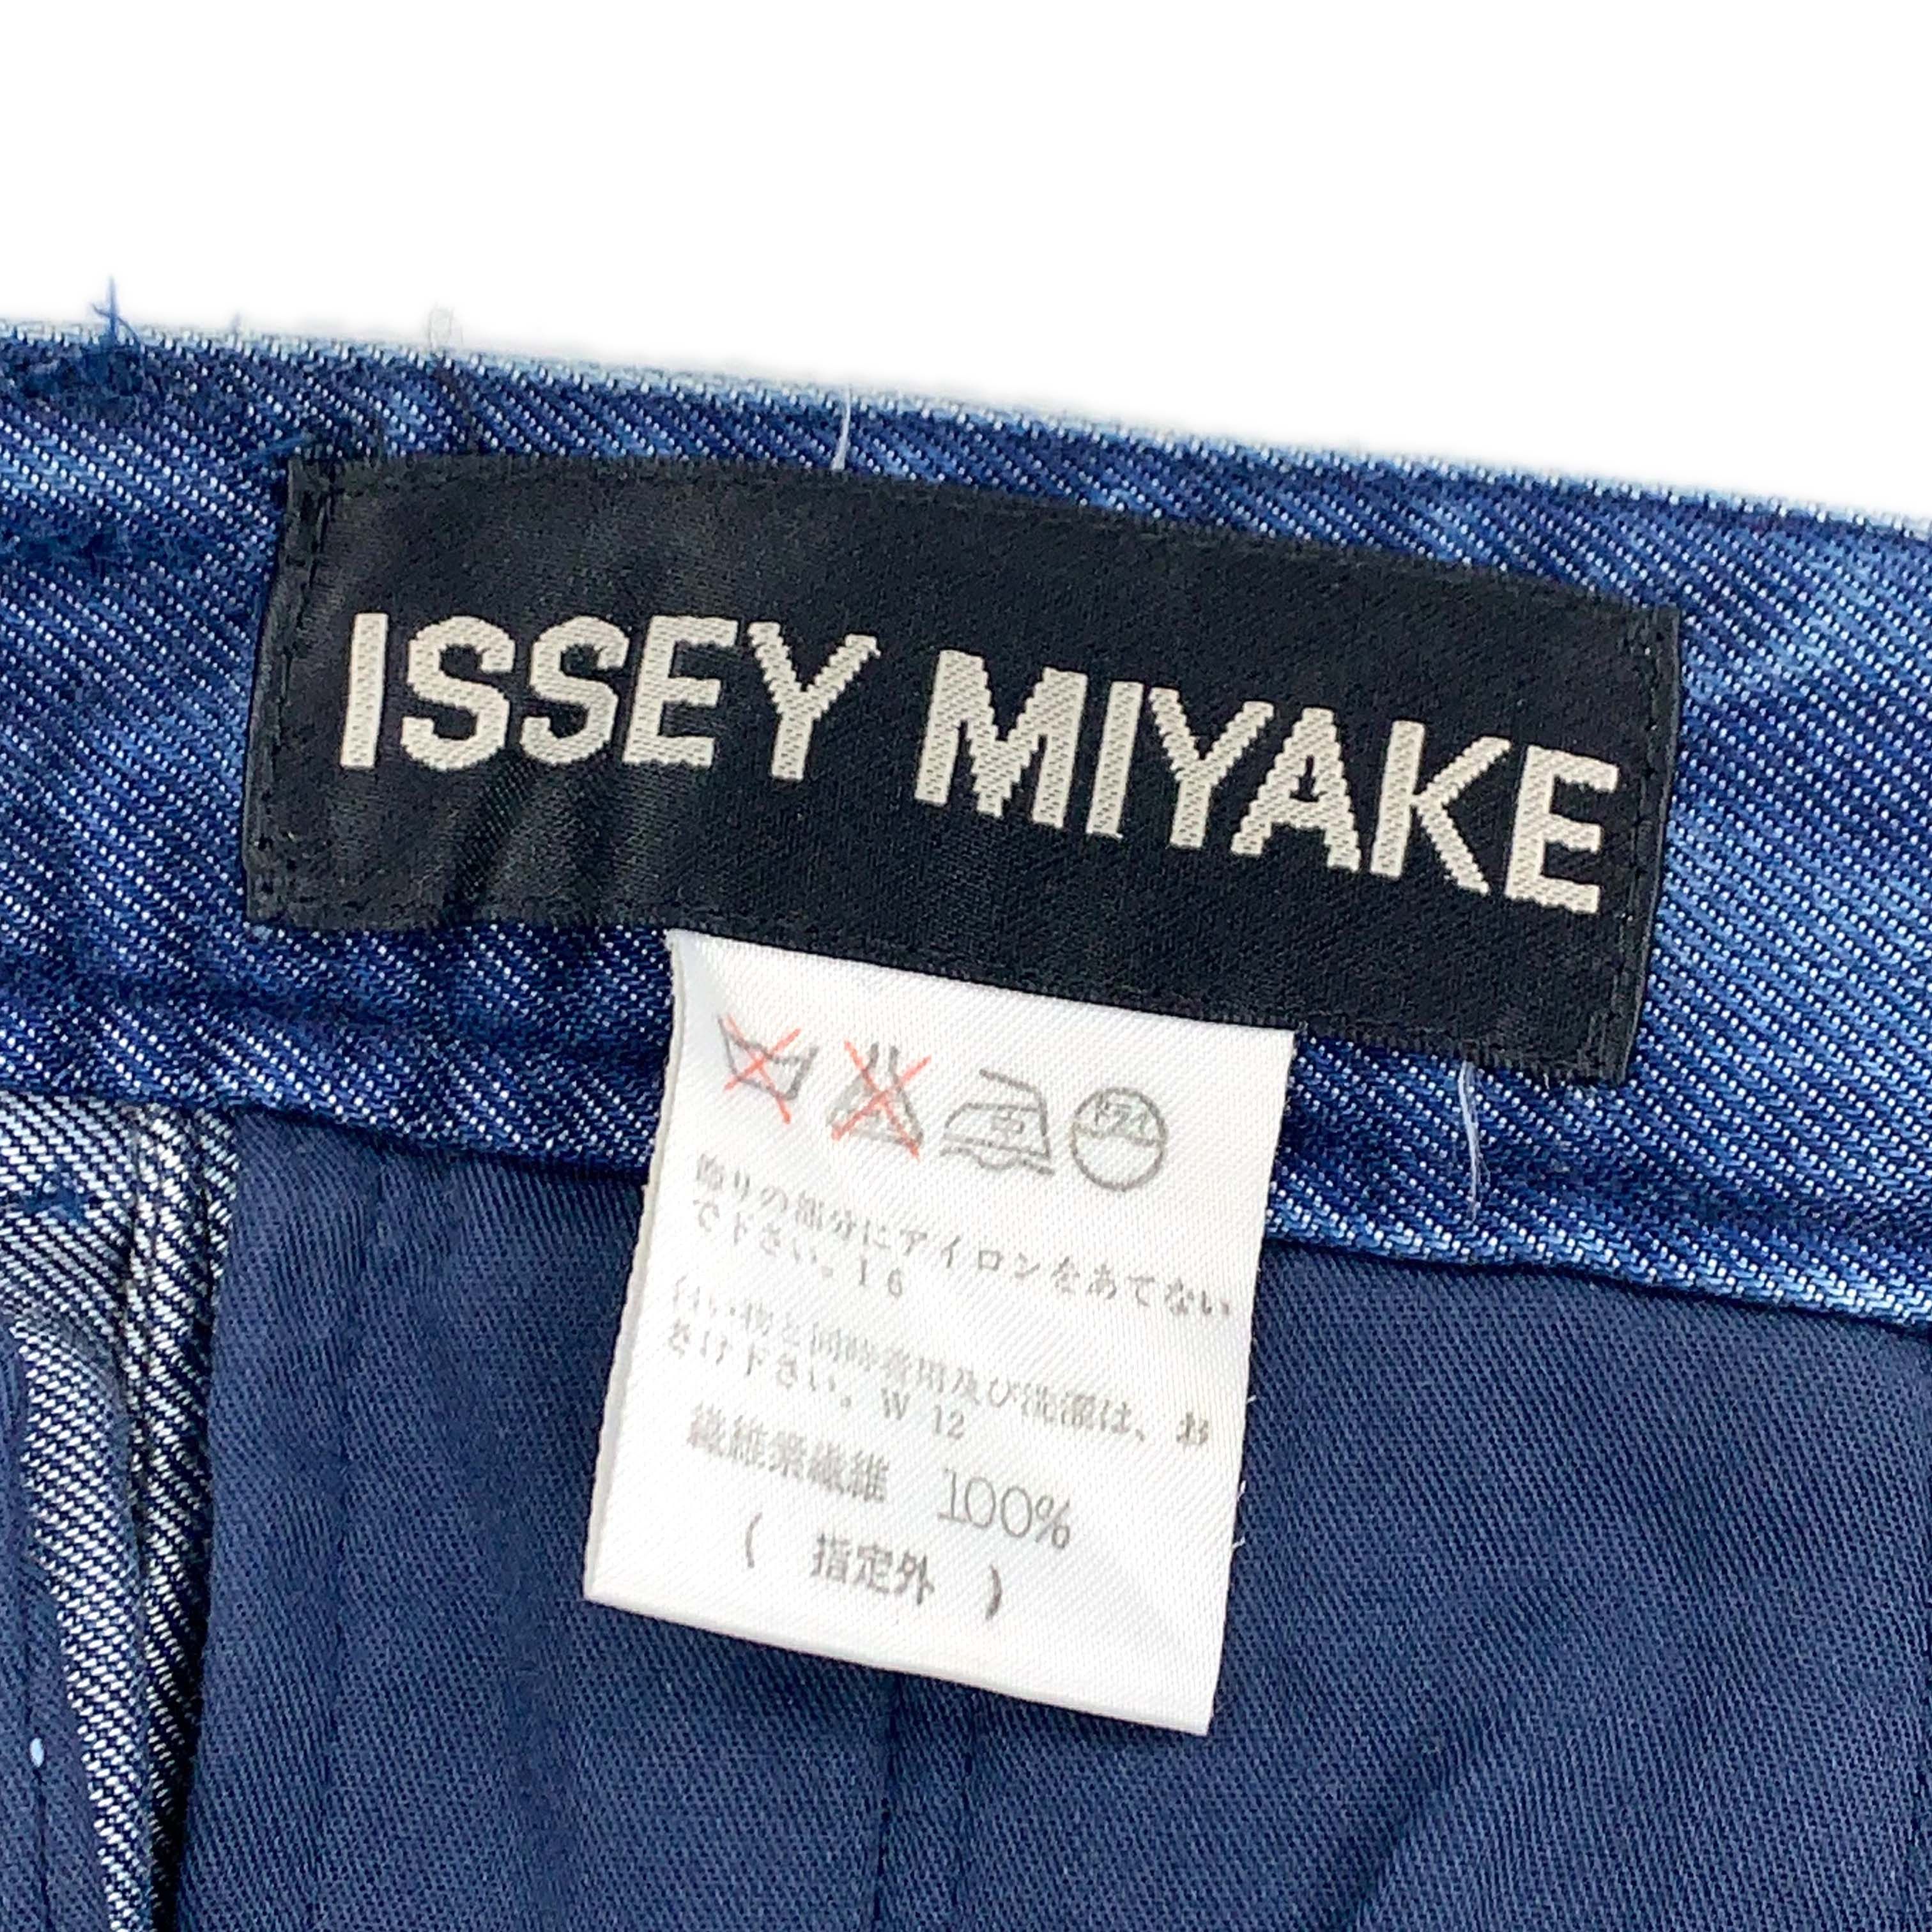 Issey Miyake - SS93 Denim Work Suit - 11